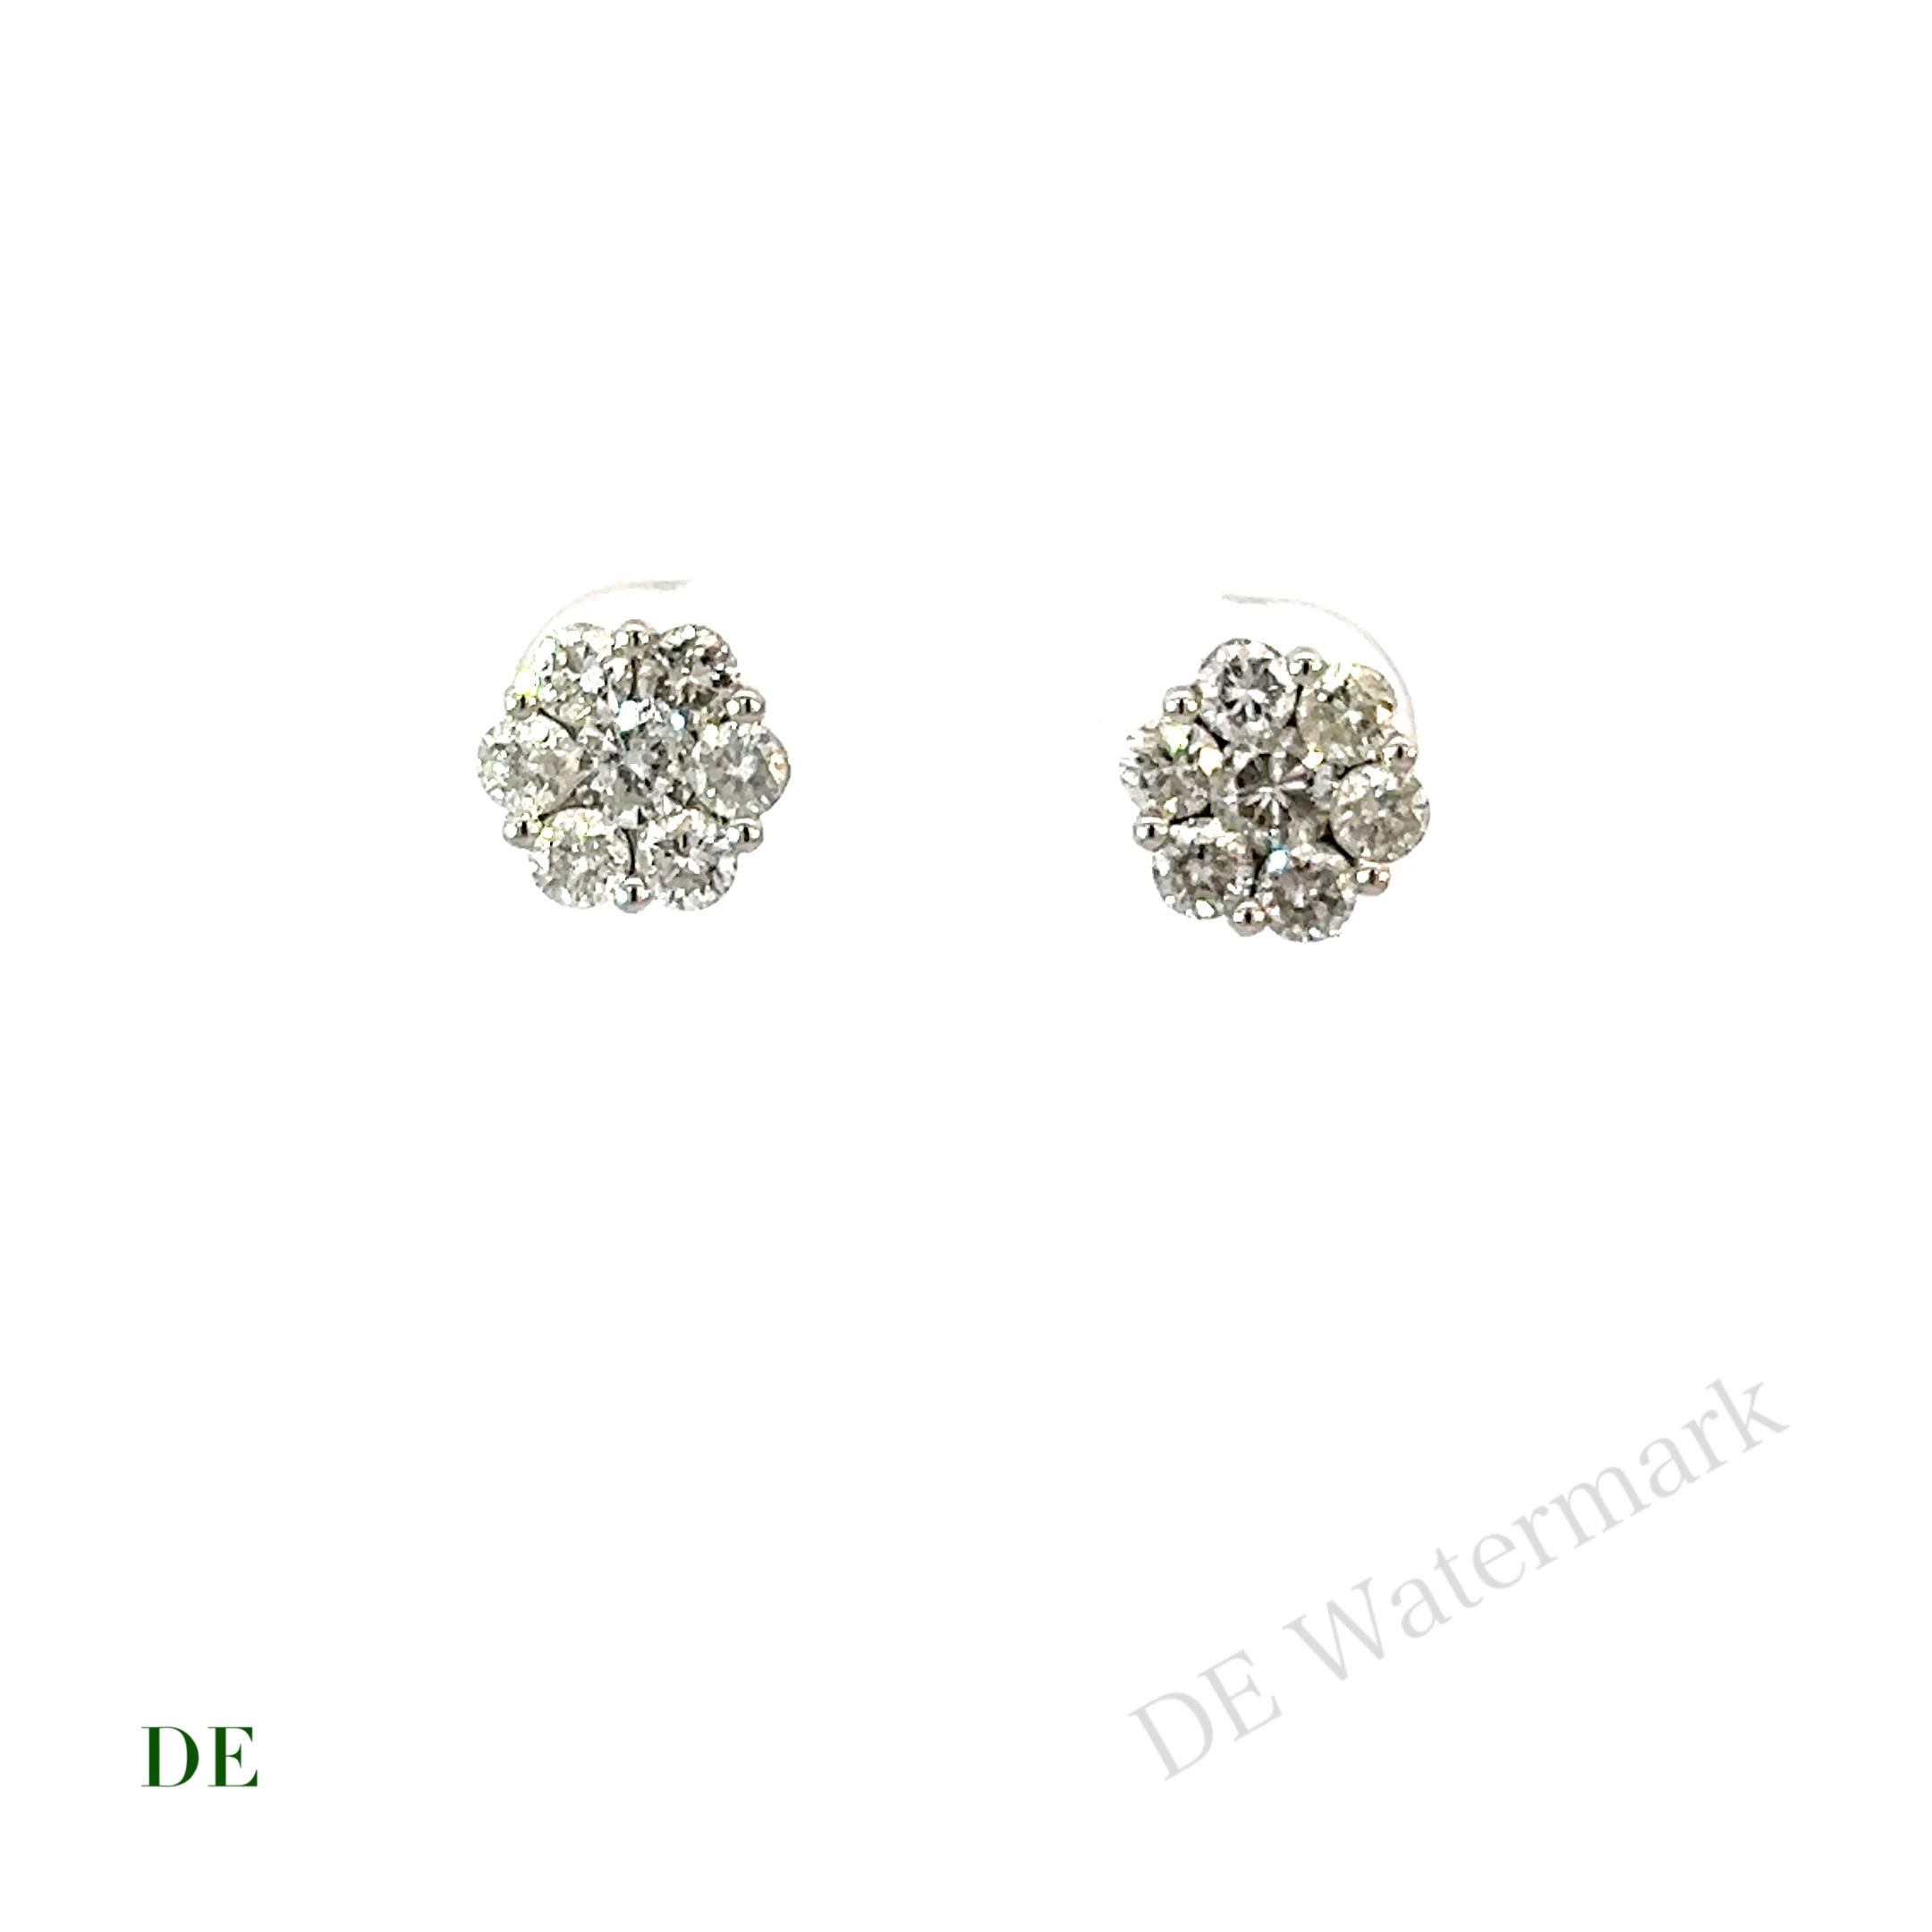 Women's or Men's Classic 14k White Gold 1.28 Carat Diamond Cluster Earring Stud For Sale